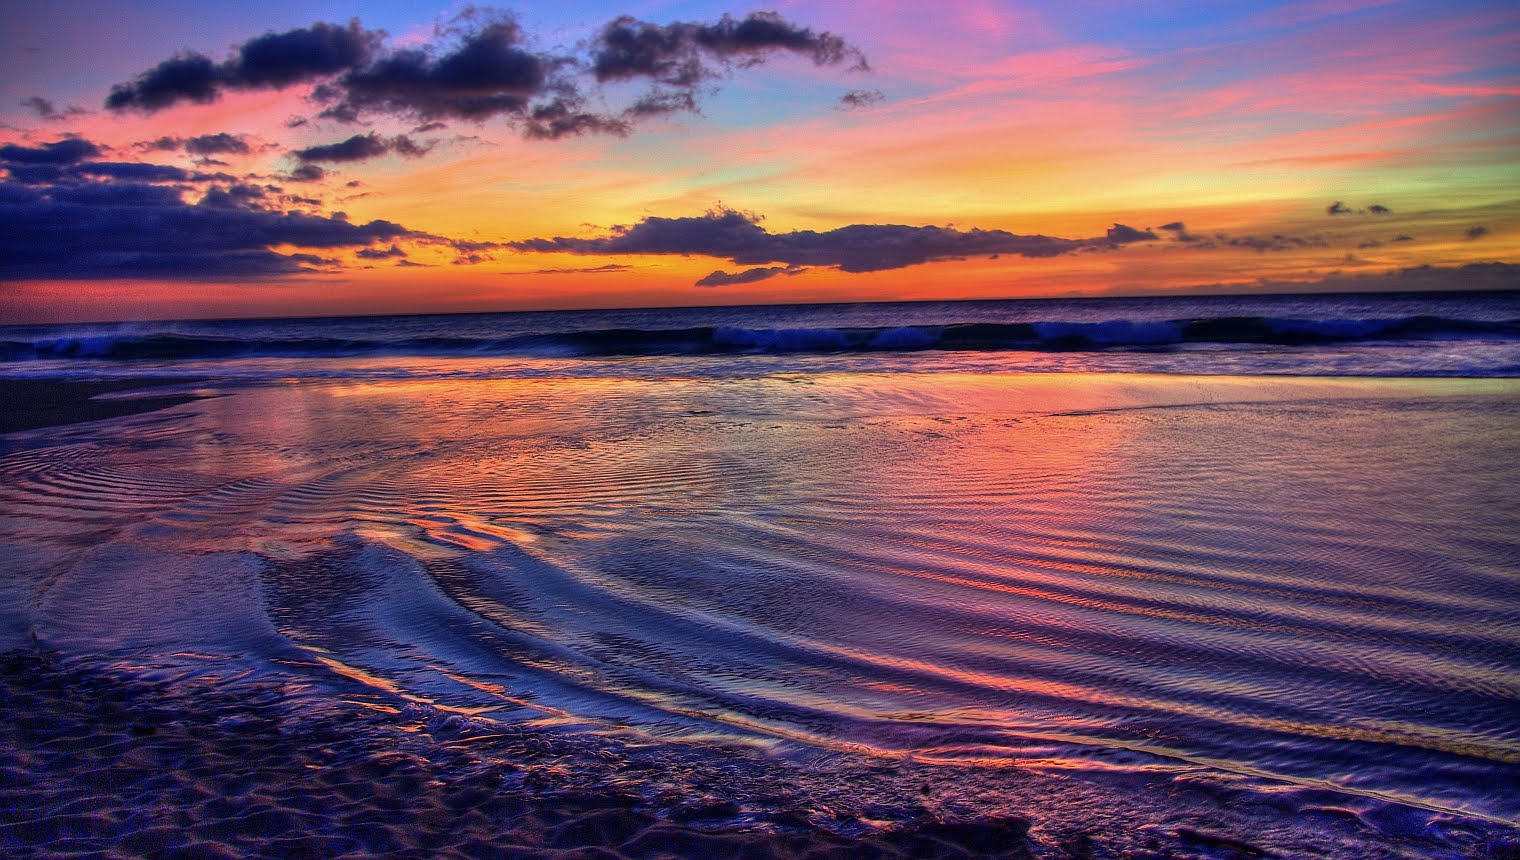 ハワイの夕日の壁紙,空,水域,地平線,自然,海